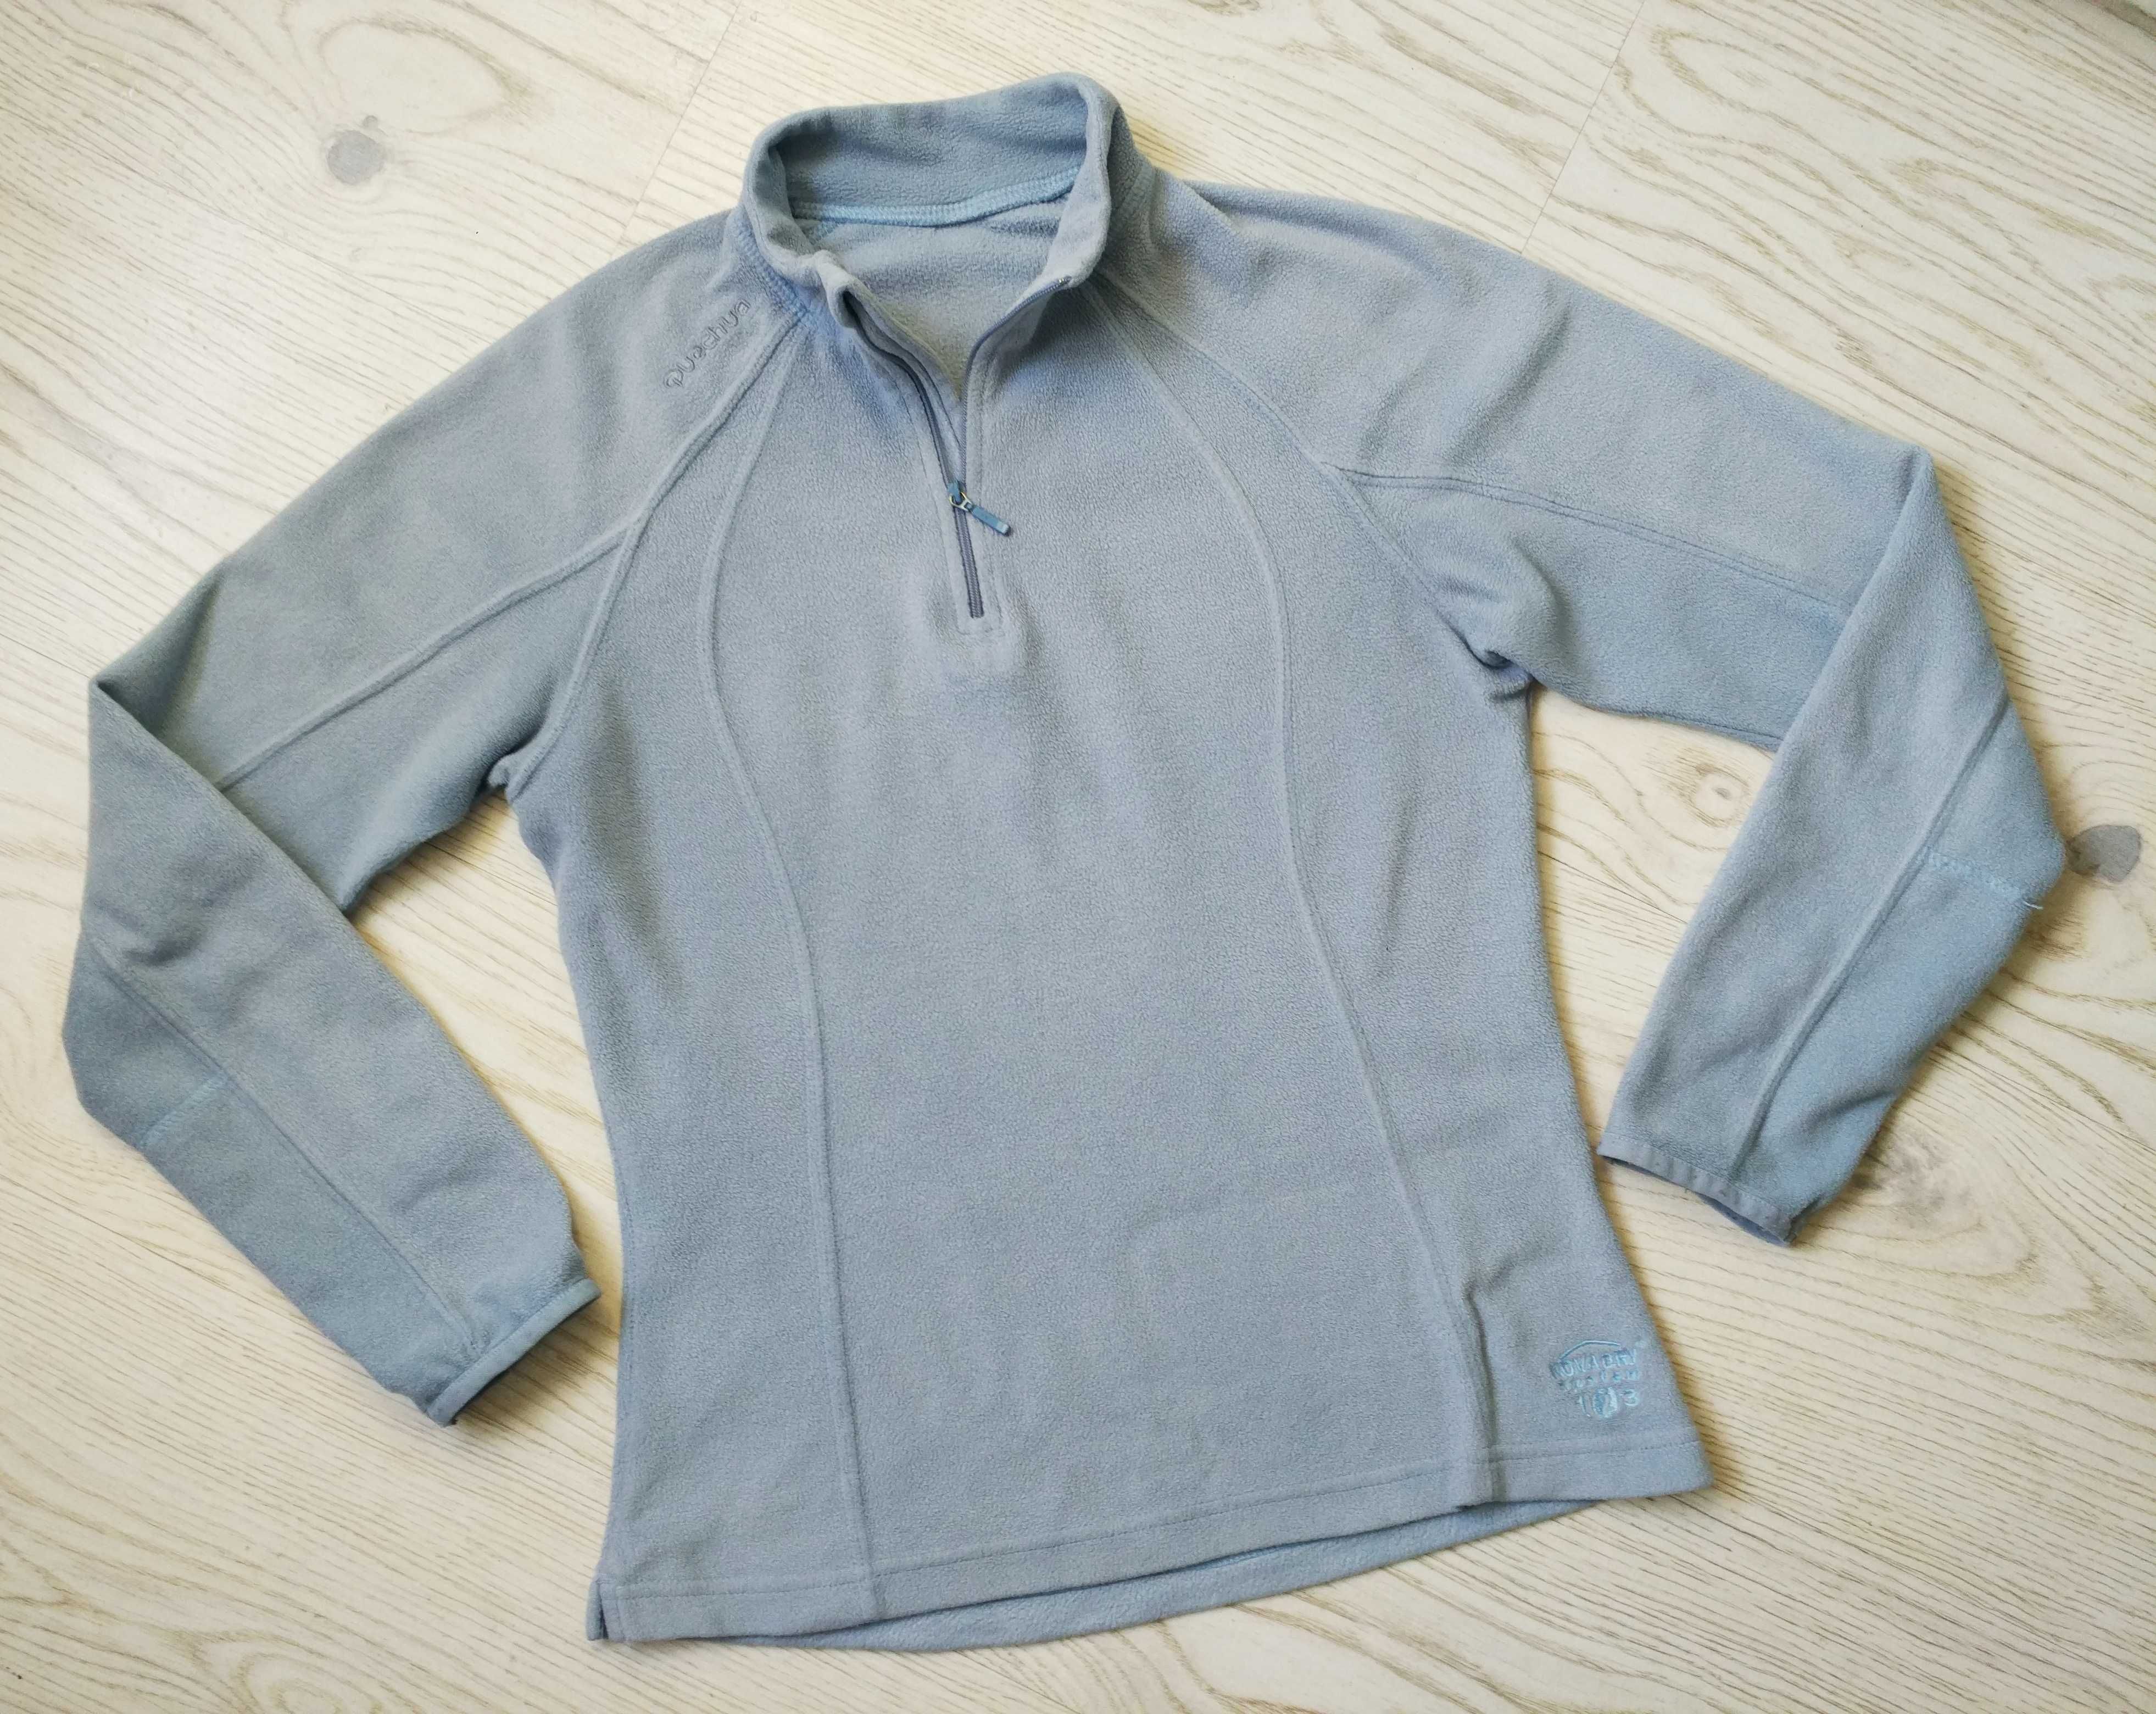 Bluza termiczna polarowa Quechua półgolf r 34 36 szaroniebieska bluzka